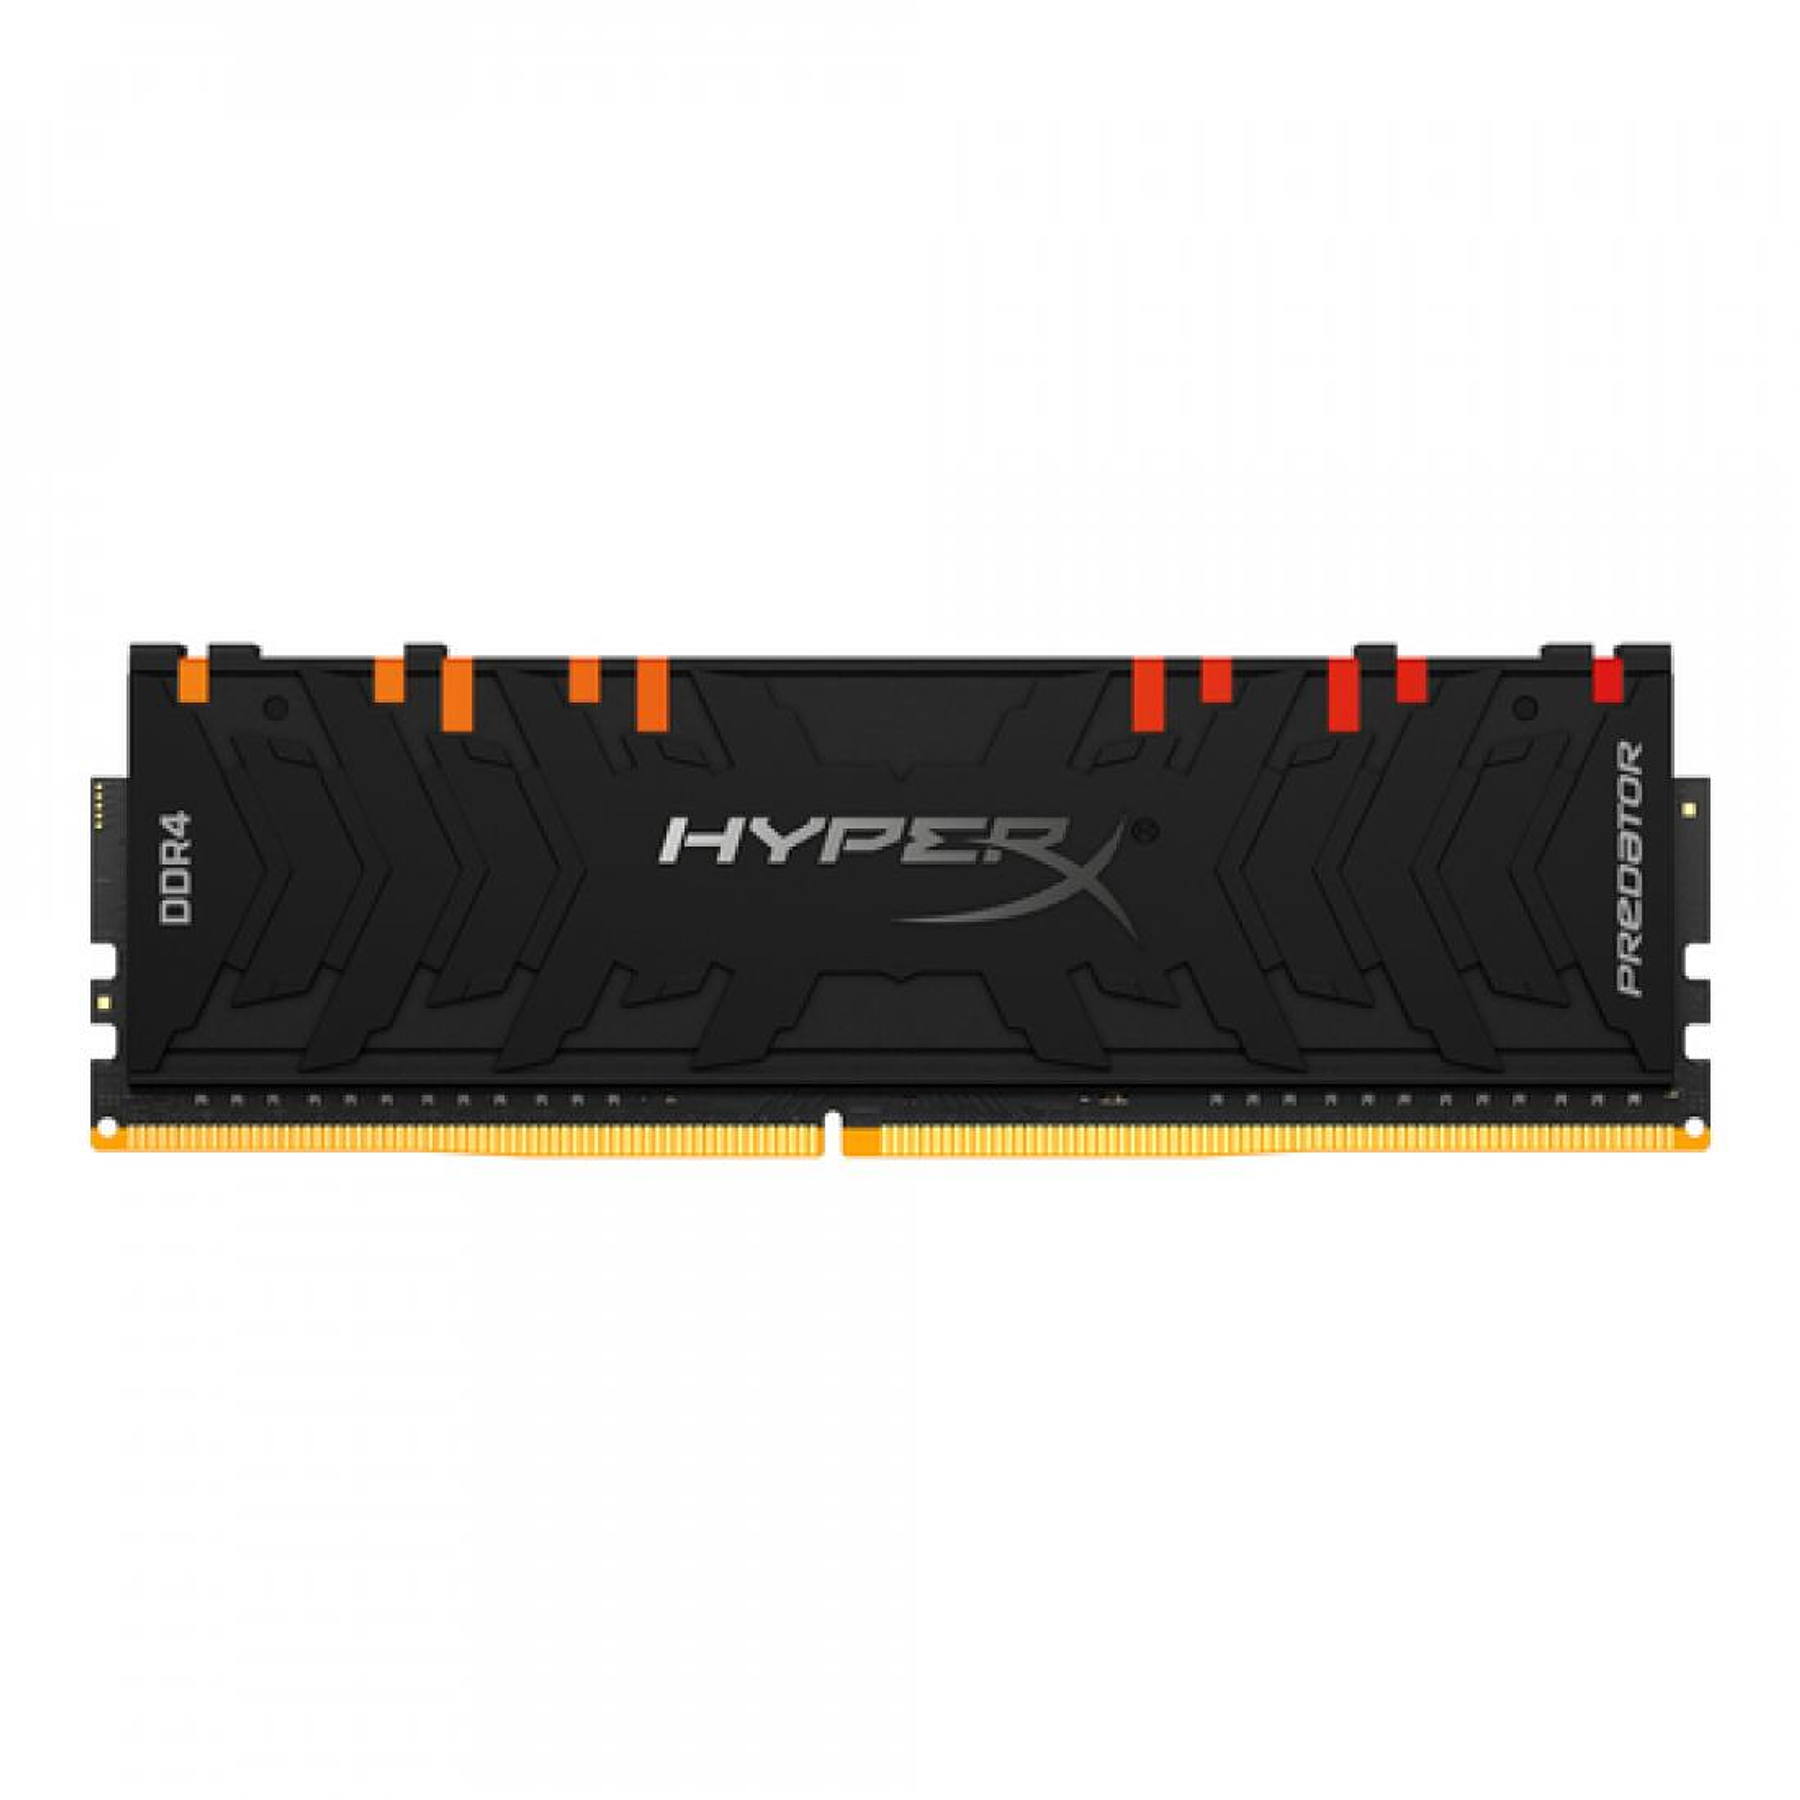 HyperX RAM 8GB 4000MHz DDR4 DIMM Predator RGB